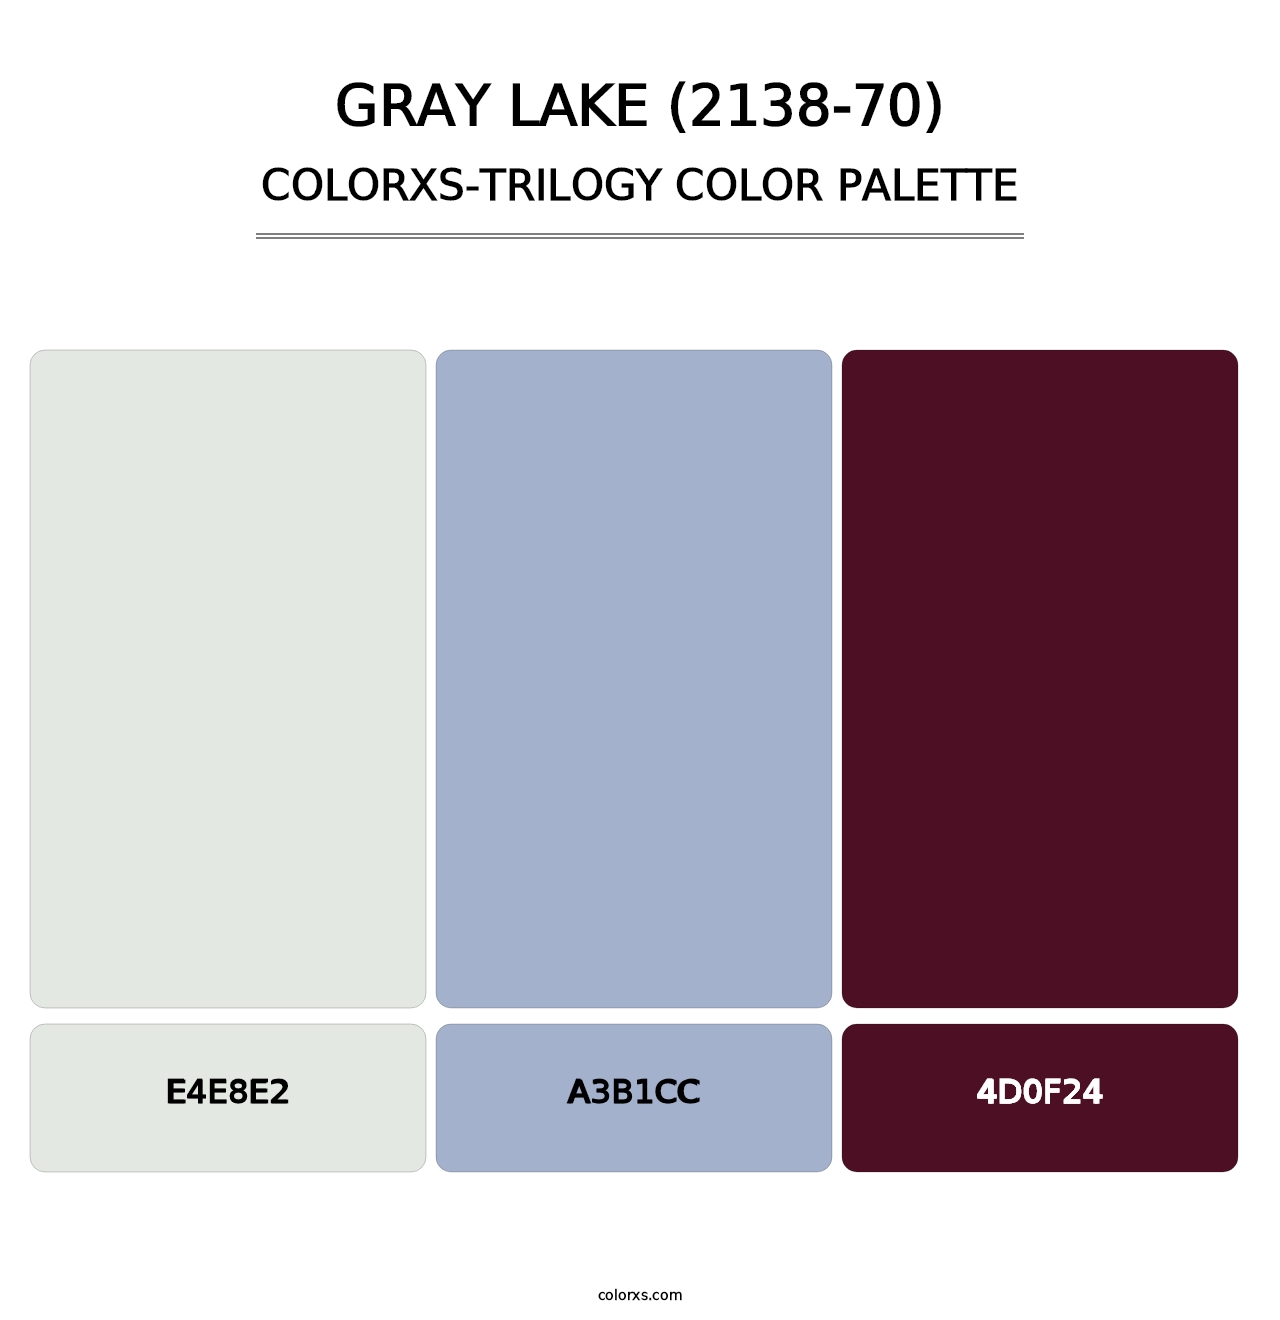 Gray Lake (2138-70) - Colorxs Trilogy Palette